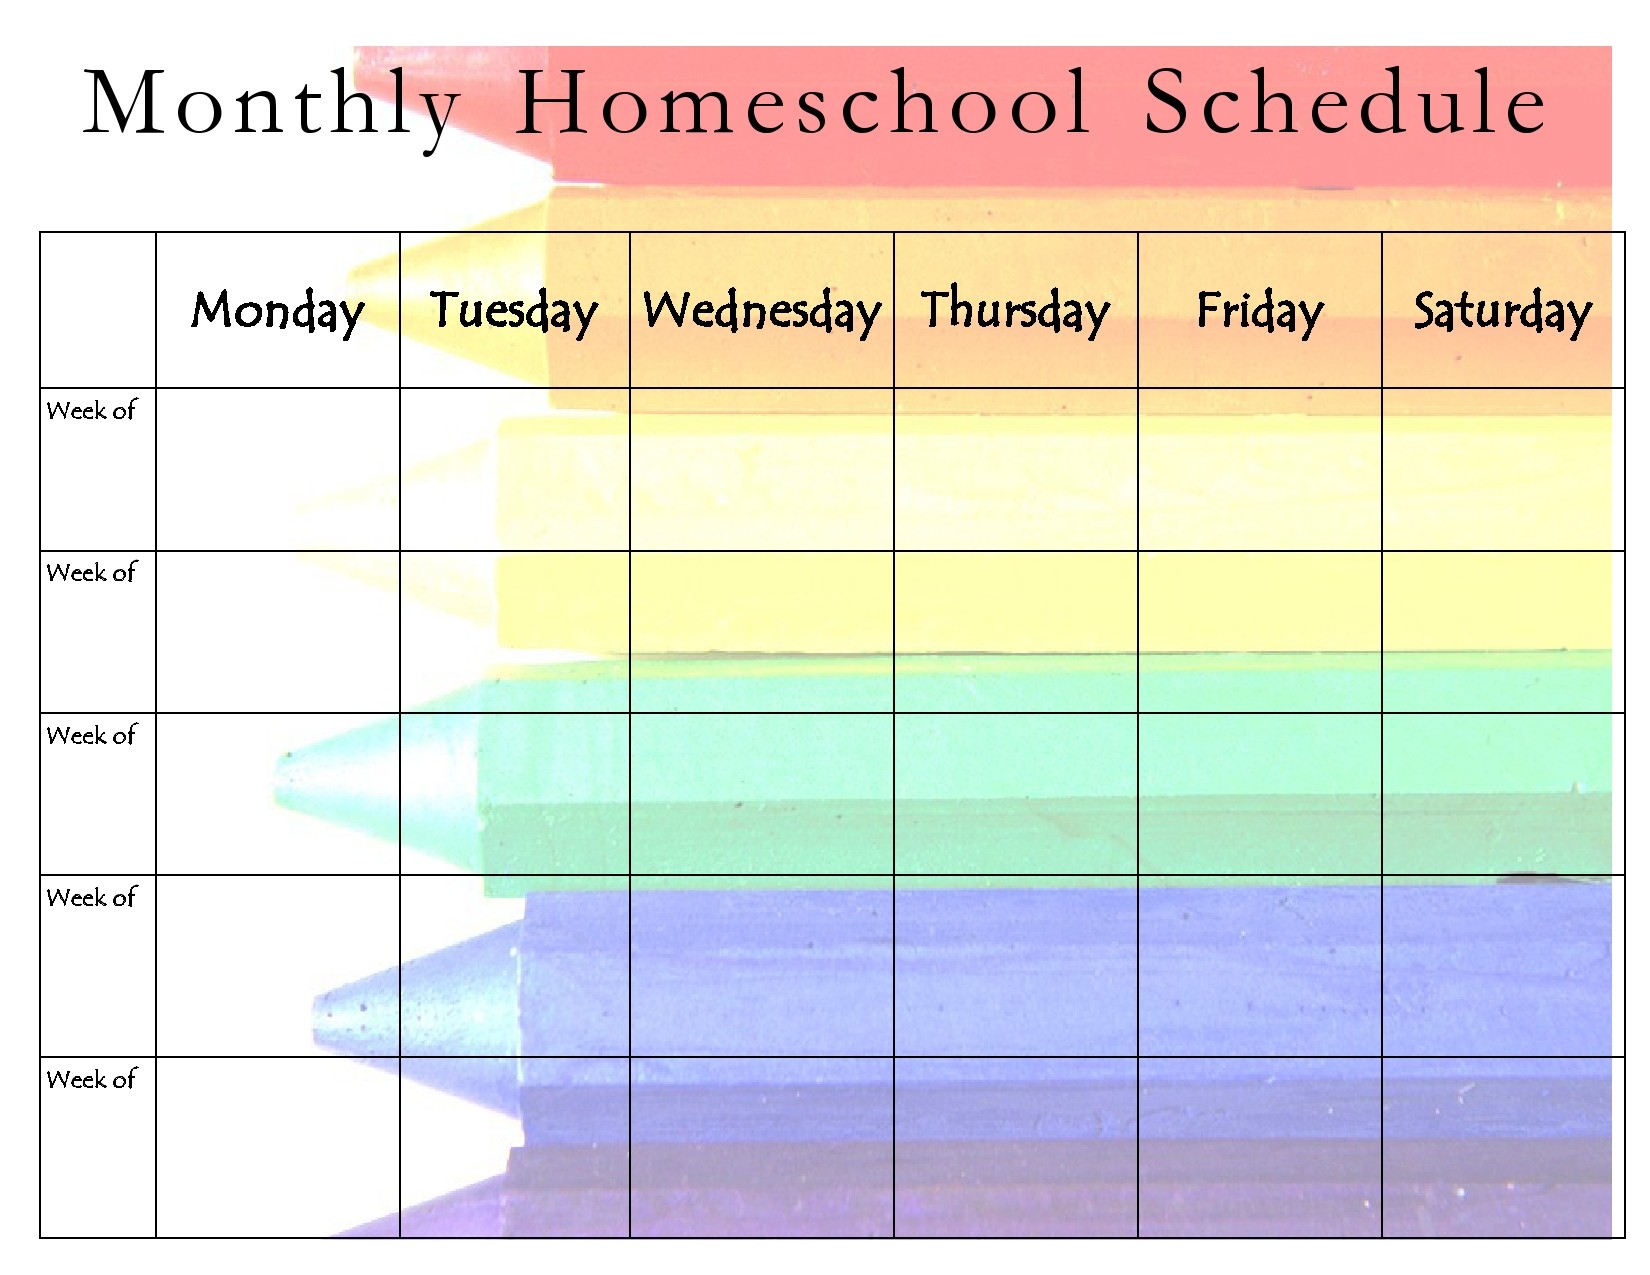 Weekly Homeschool Schedule Template